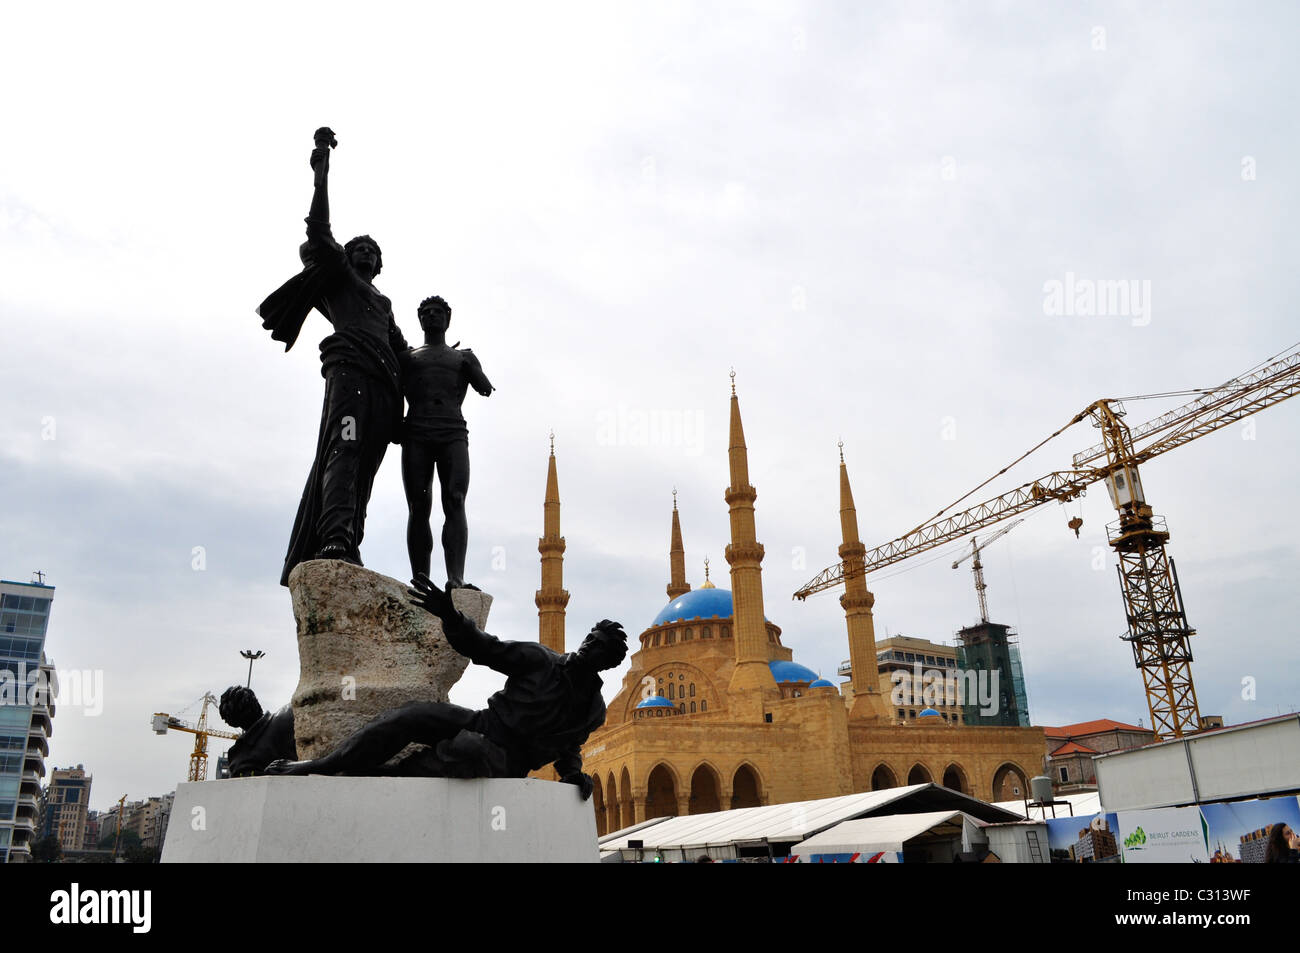 Piazza Martiri, il centro cittadino di Beirut e la moschea costruita dal compianto Primo Ministro Hariri, Libano Foto Stock